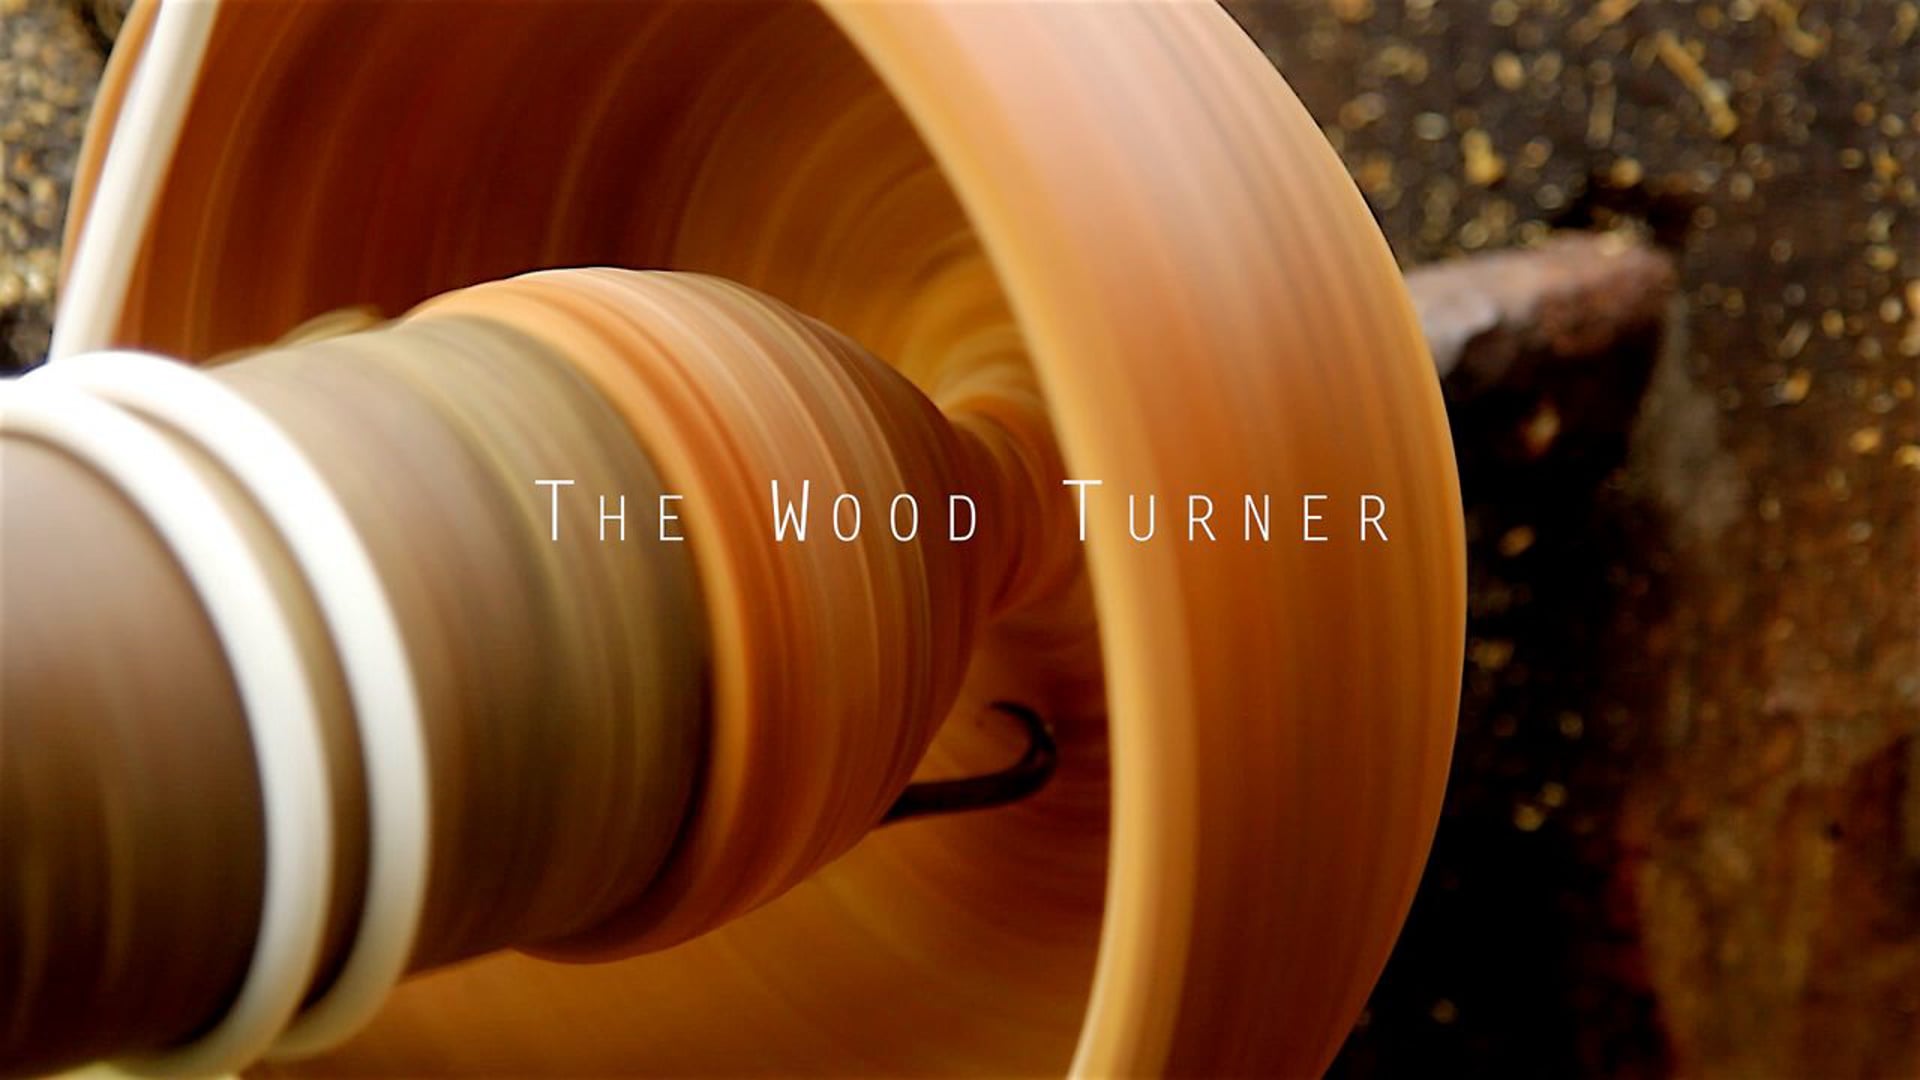 The Wood Turner